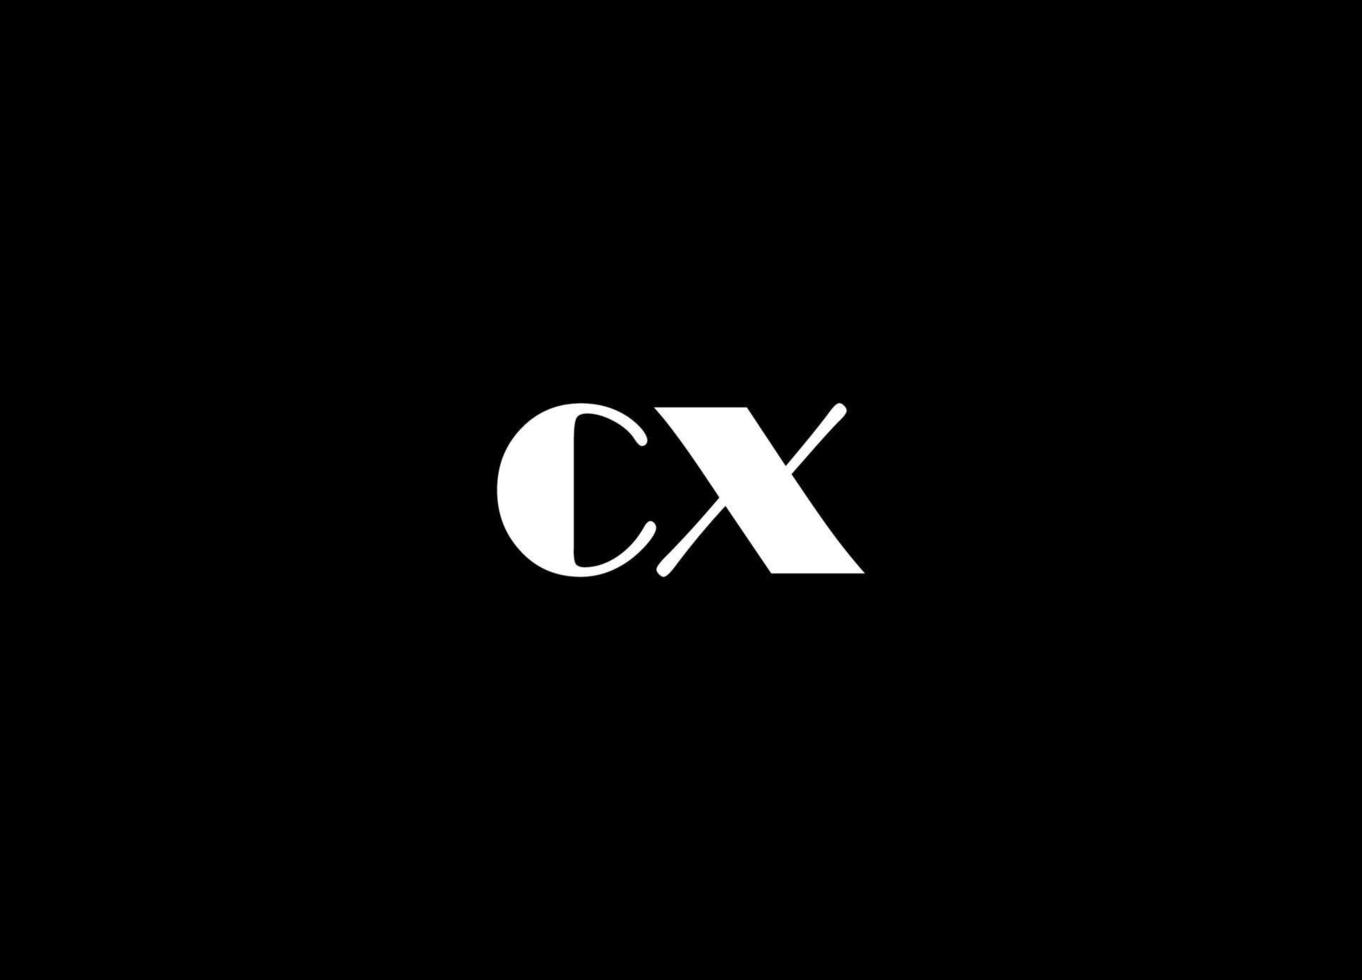 cx logo ontwerp en bedrijf logo vector